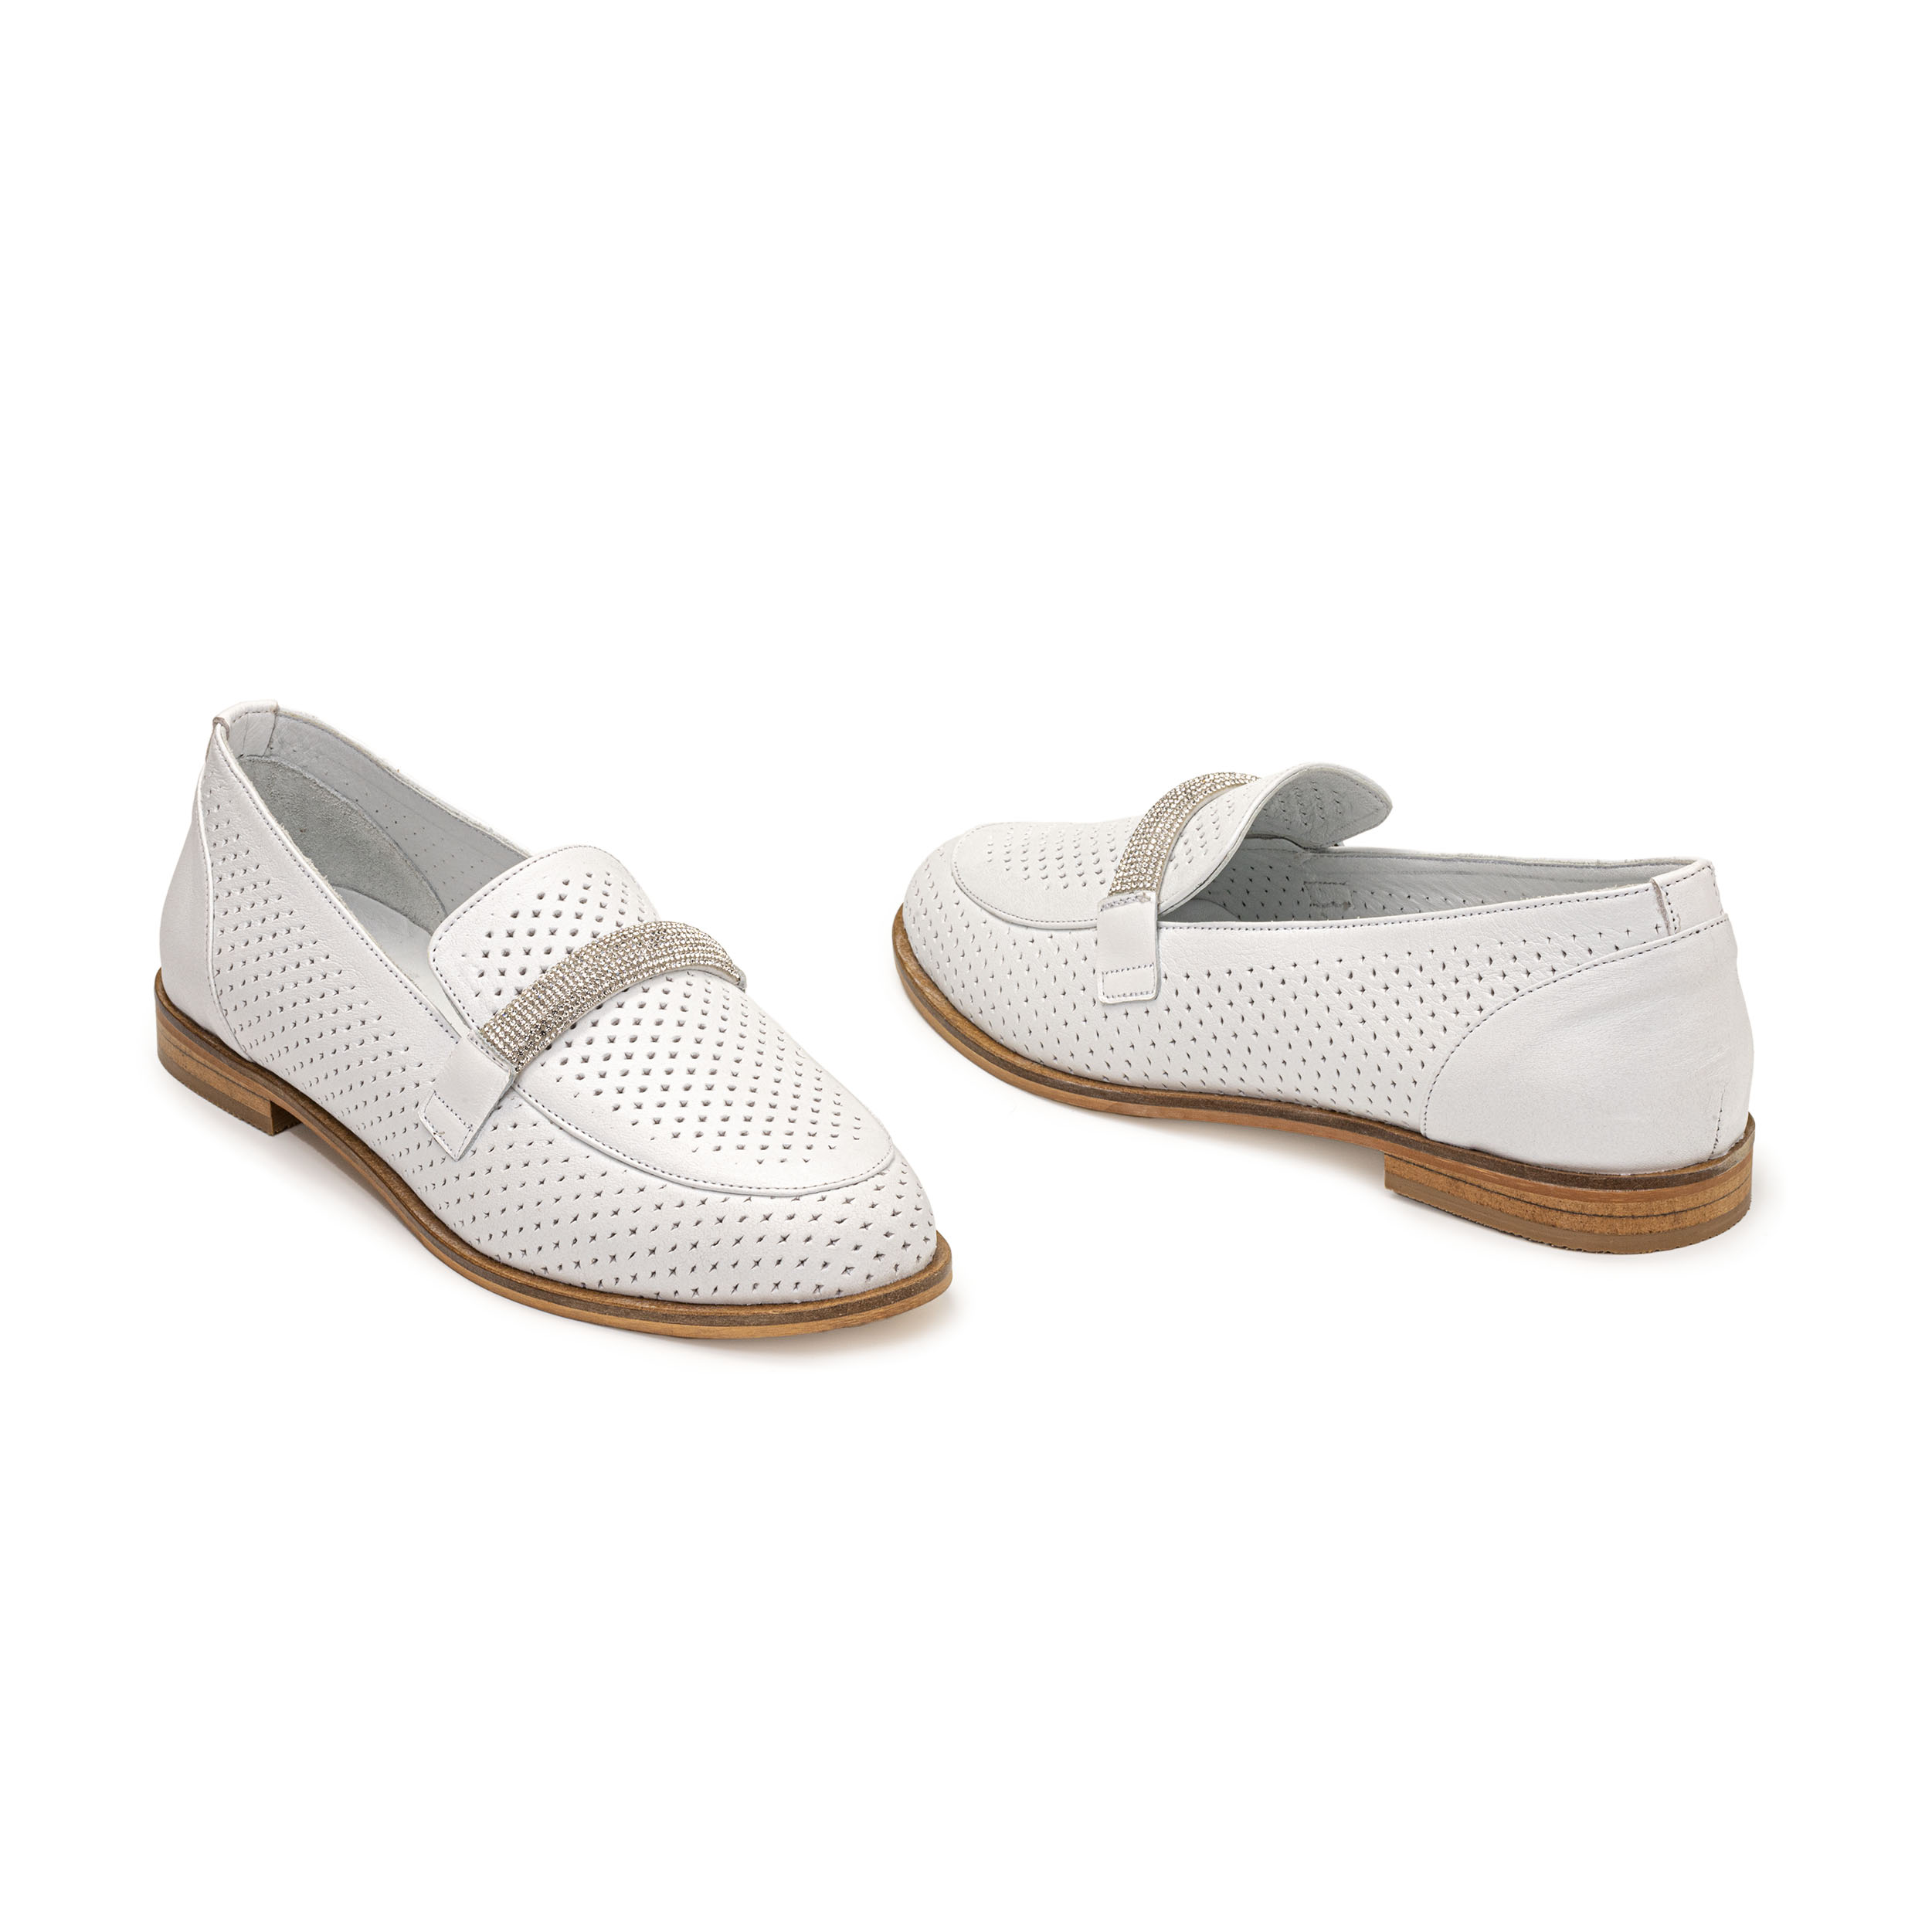 TwoEgoist Kadın Hakiki Deri Günlük Şık Tokalı Klasik Loafer Babet Ayakkabı, Renk: Beyaz, Beden: 36